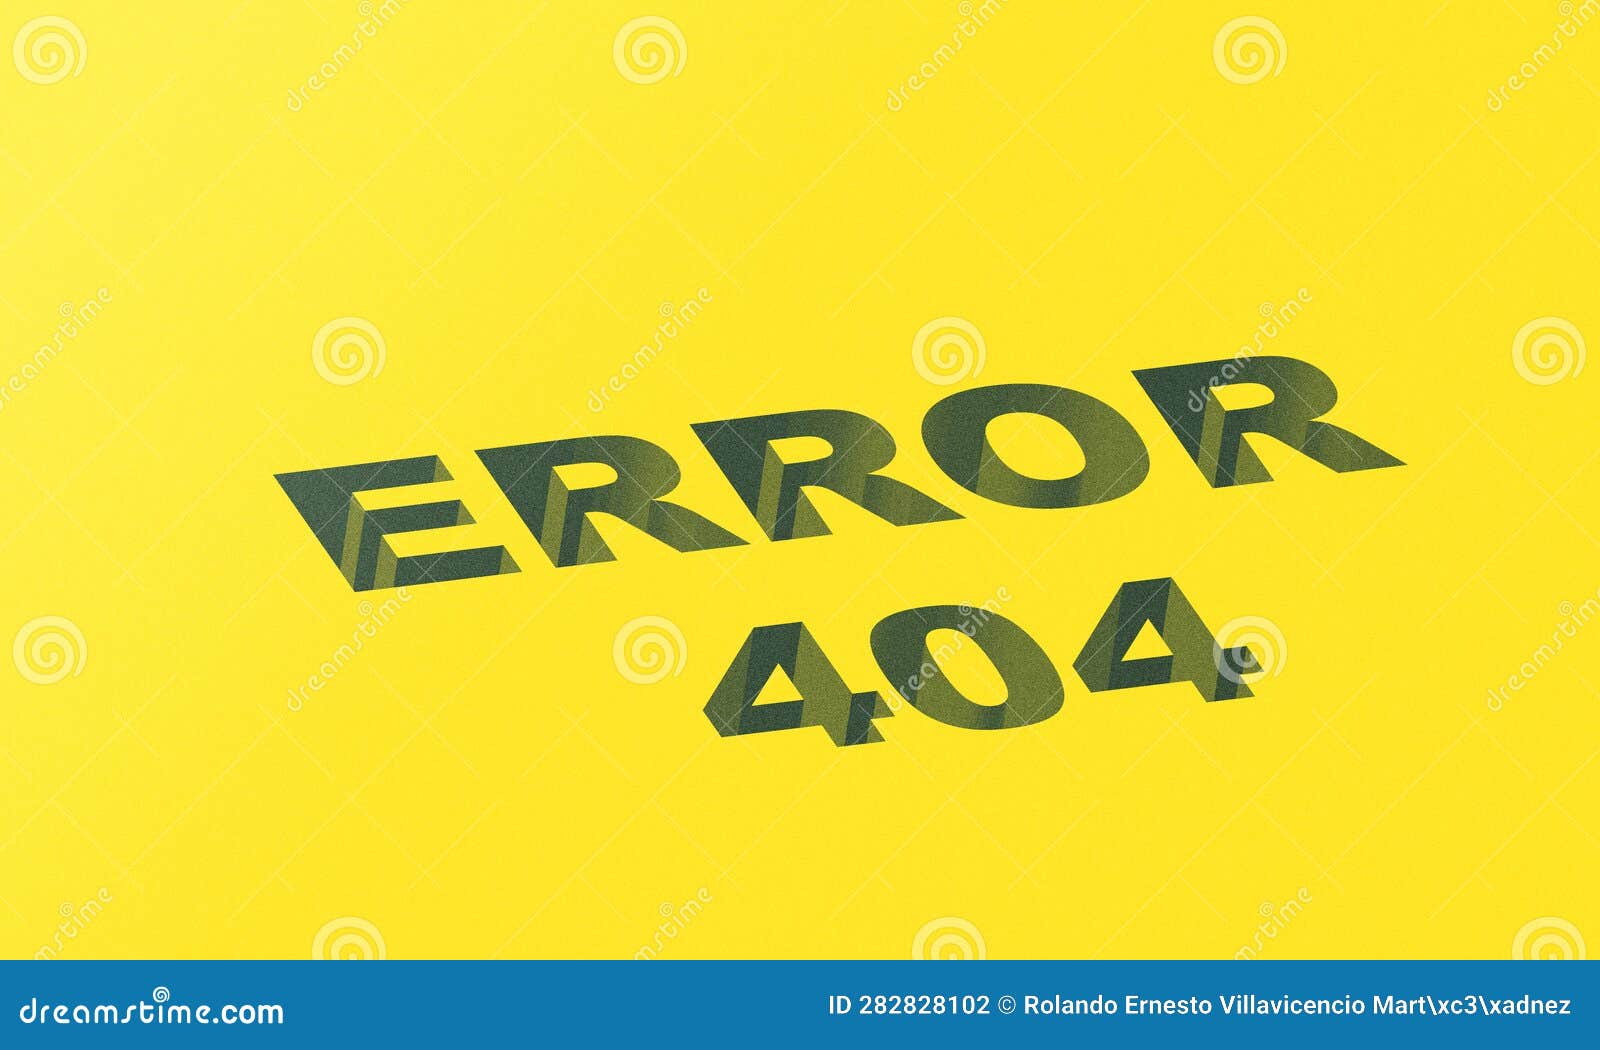 ilustraciÃ³n con error 404, pÃ¡gina web no encontrada. error del servidor.